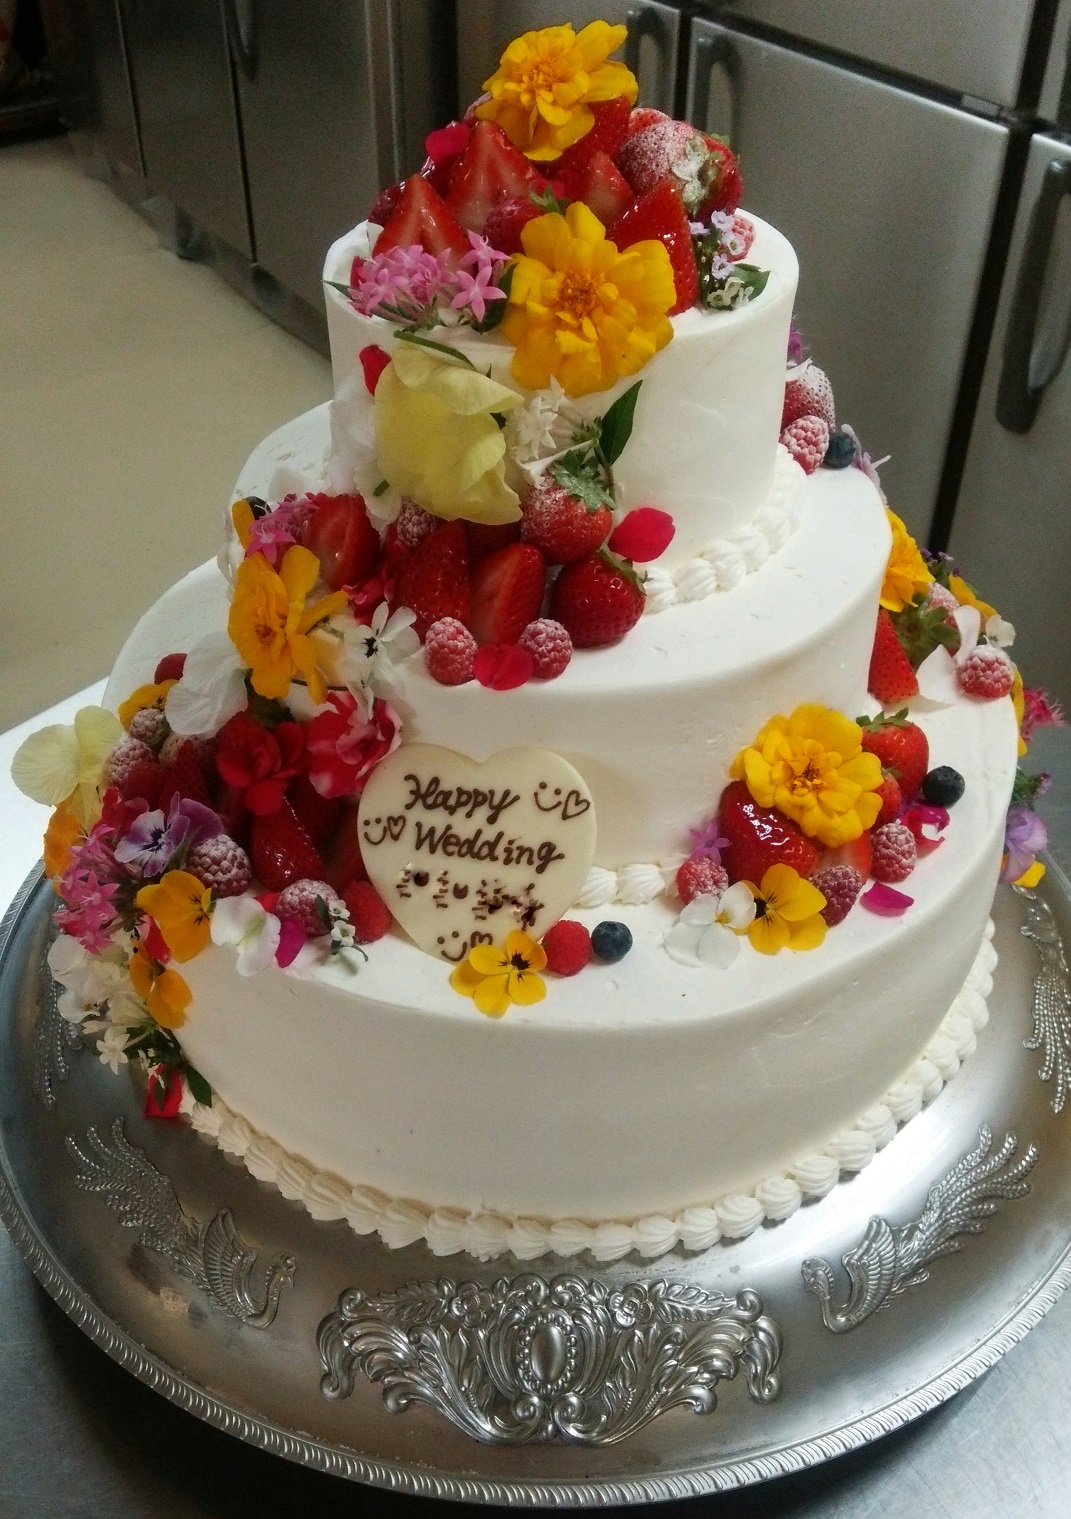 オーダーウェディングケーキ承りました 百花園 プロマガweb 新潟 三条 長岡のウェディング 結婚式場 ブライダル情報